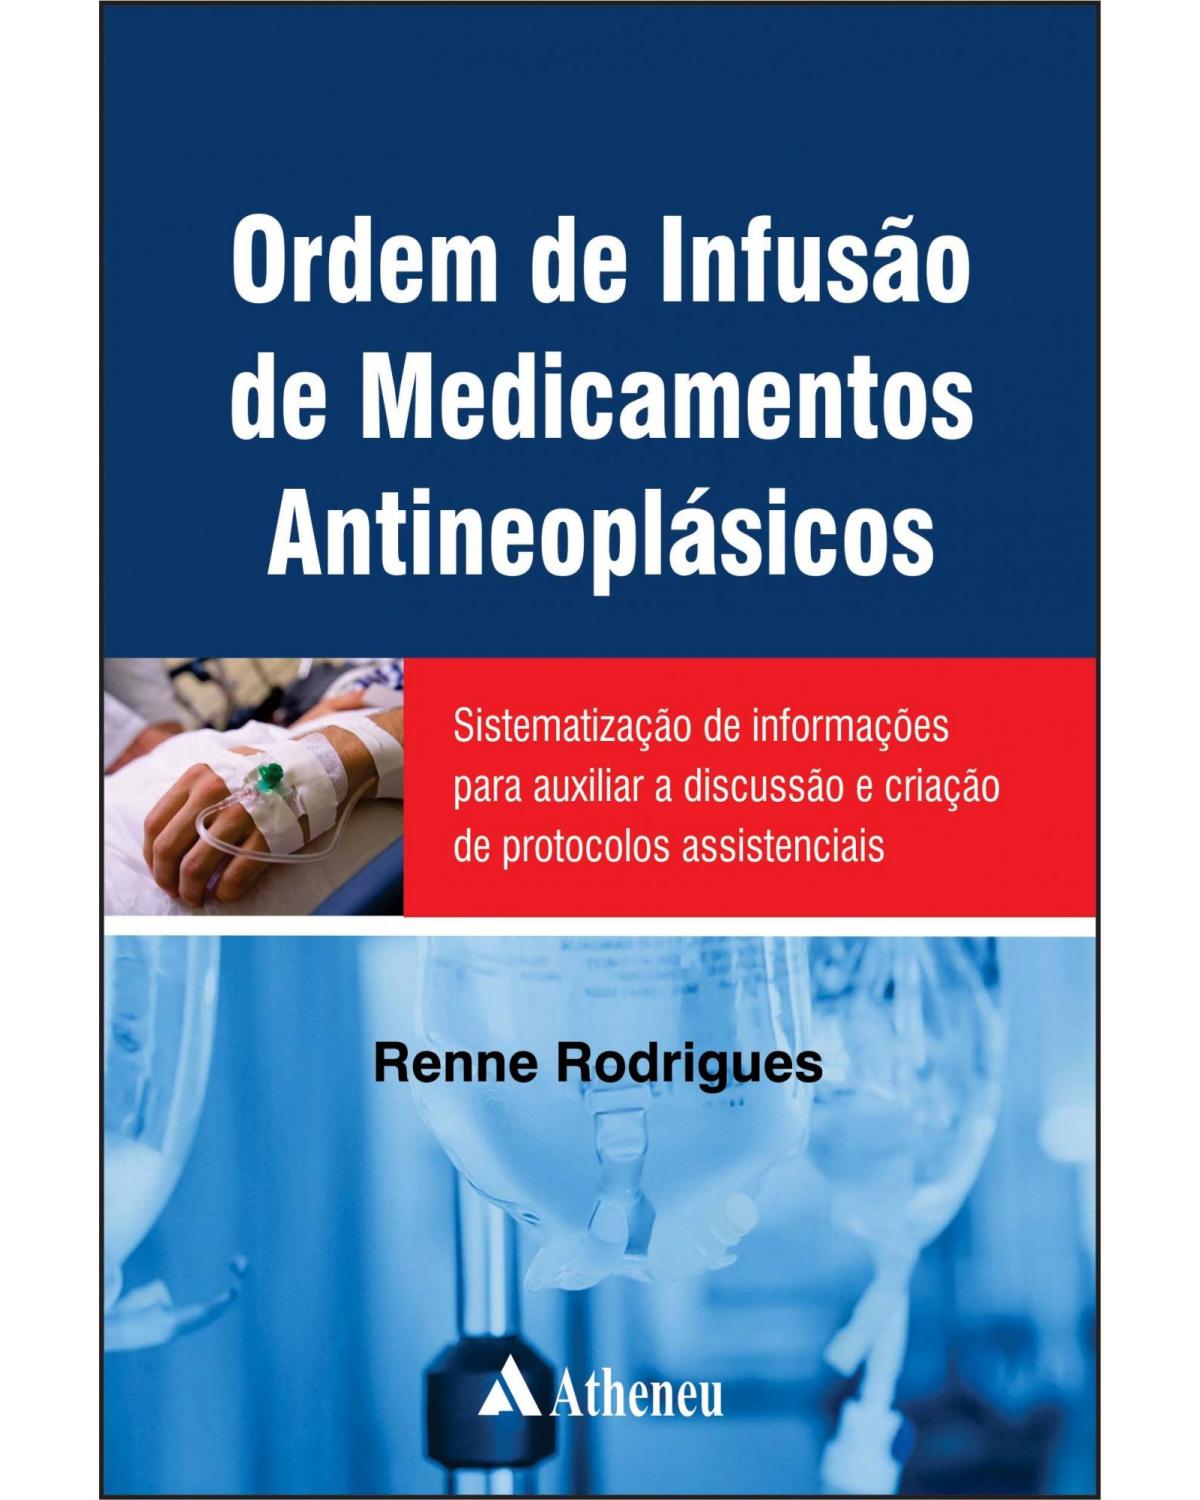 Ordem de infusão de medicamentos antineoplásicos - sistematização de informações para auxiliar a discussão e criação de protocolos assistenciais - 1ª Edição | 2015